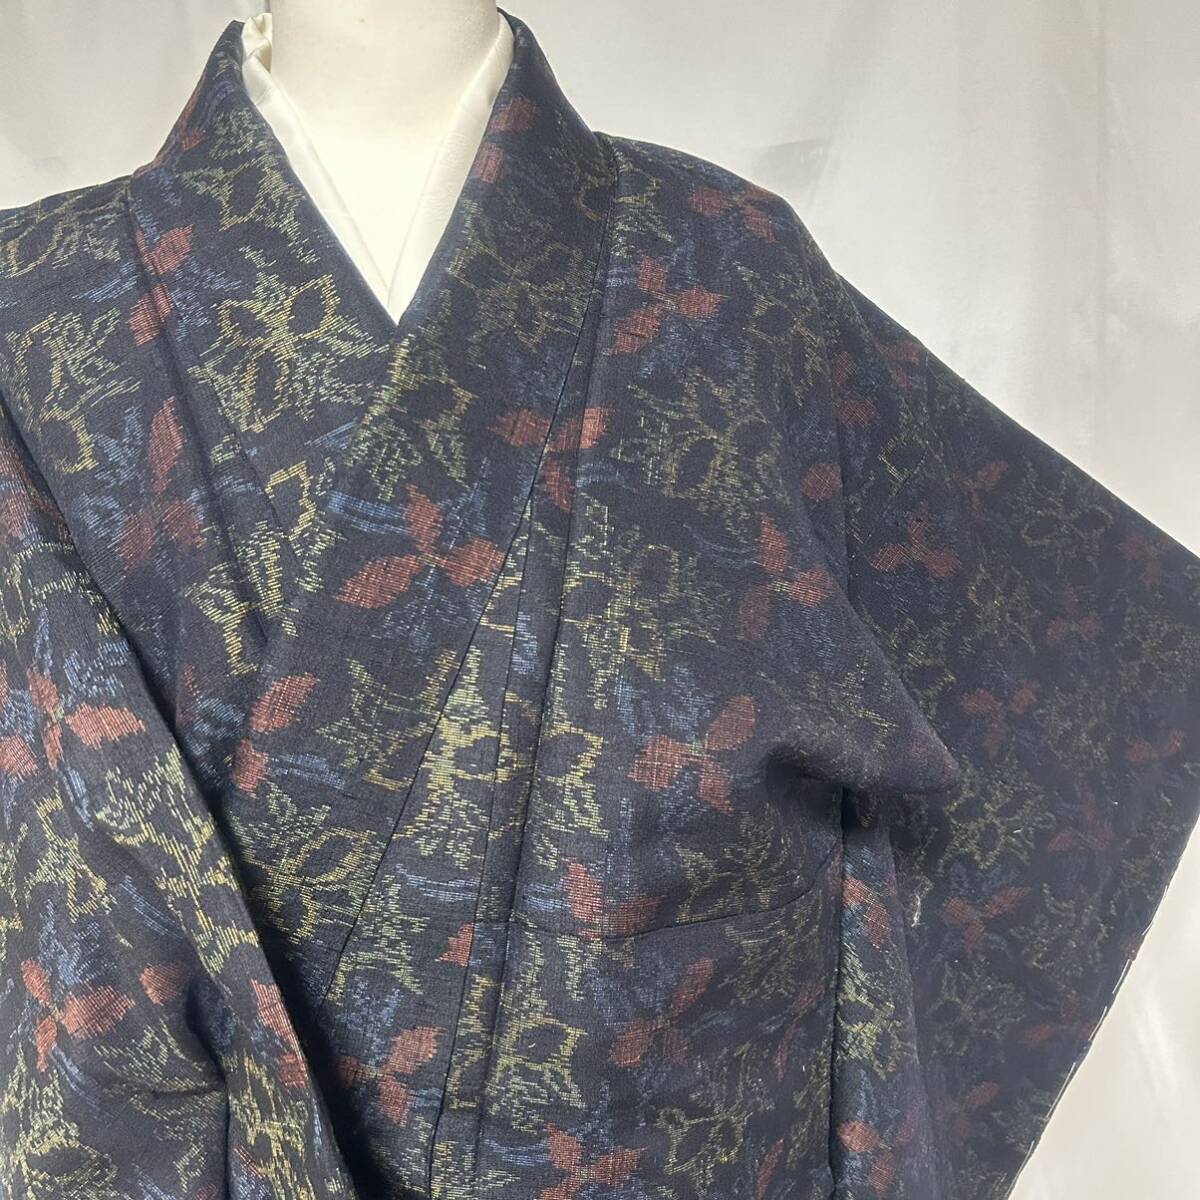 * кимоно .* дисциплина имеется прекрасный товар шёлк из Юки . цветок мелкий рисунок длина 160cm японский костюм японская одежда кимоно натуральный шелк #X003